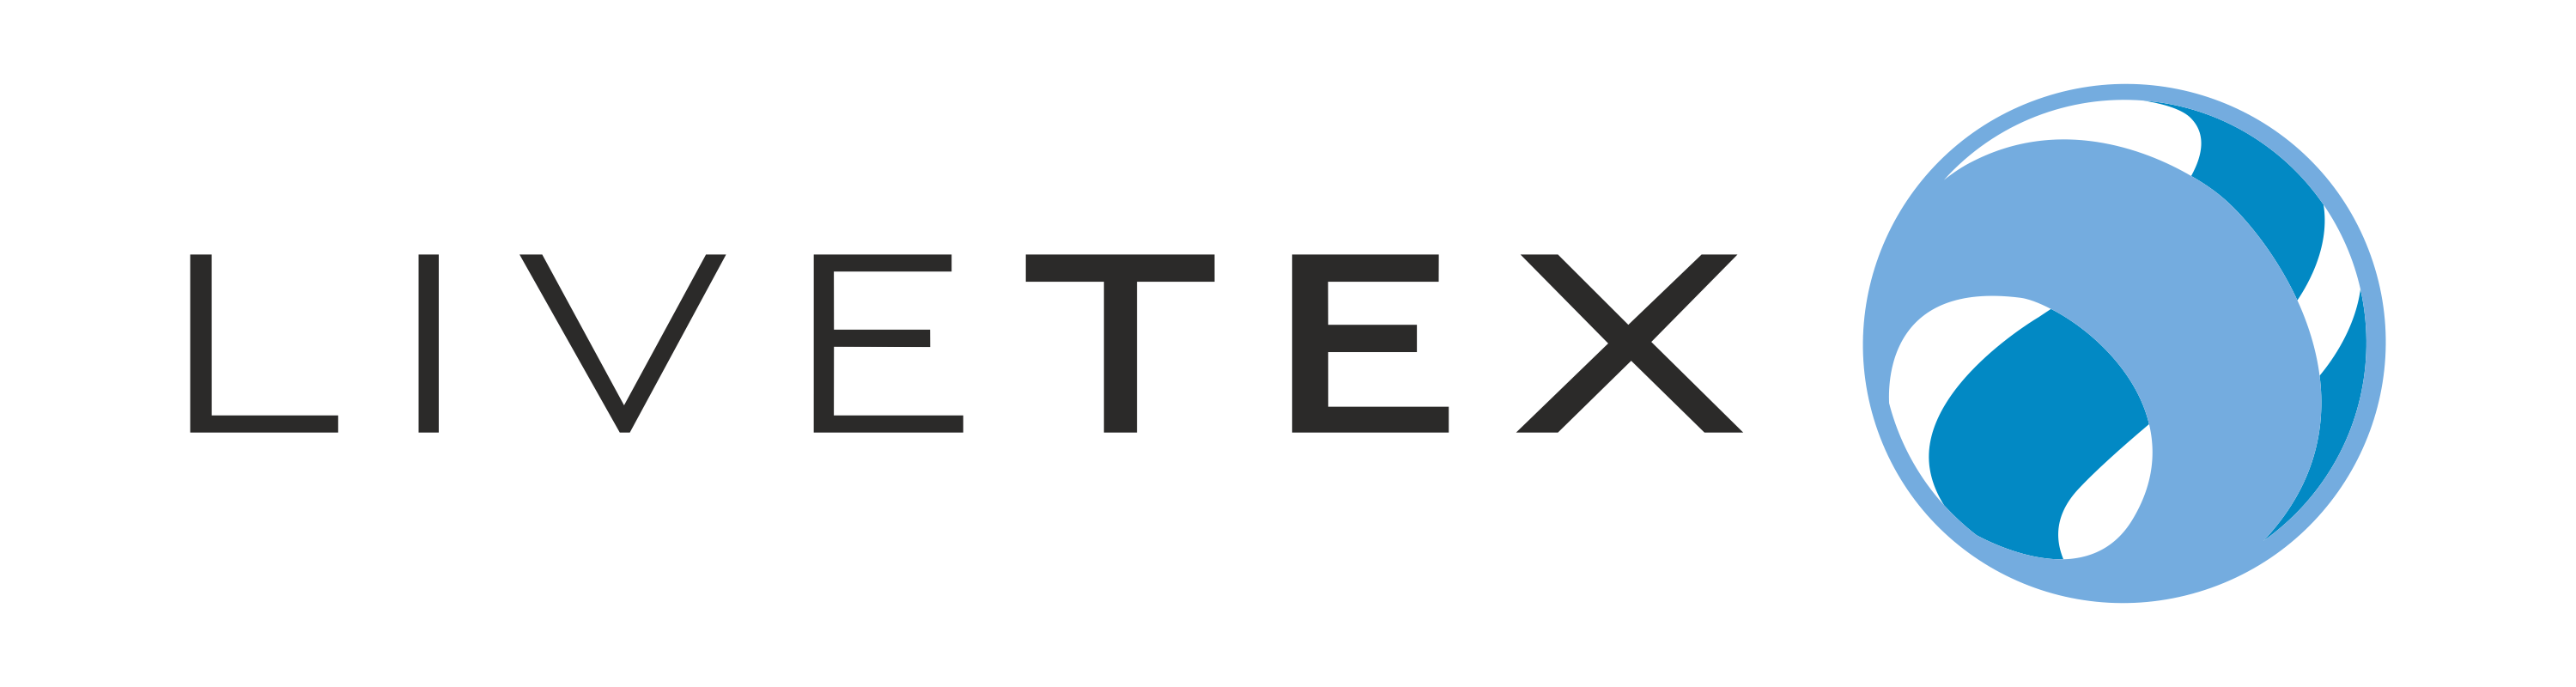 LiveTex - ЛайвТекс